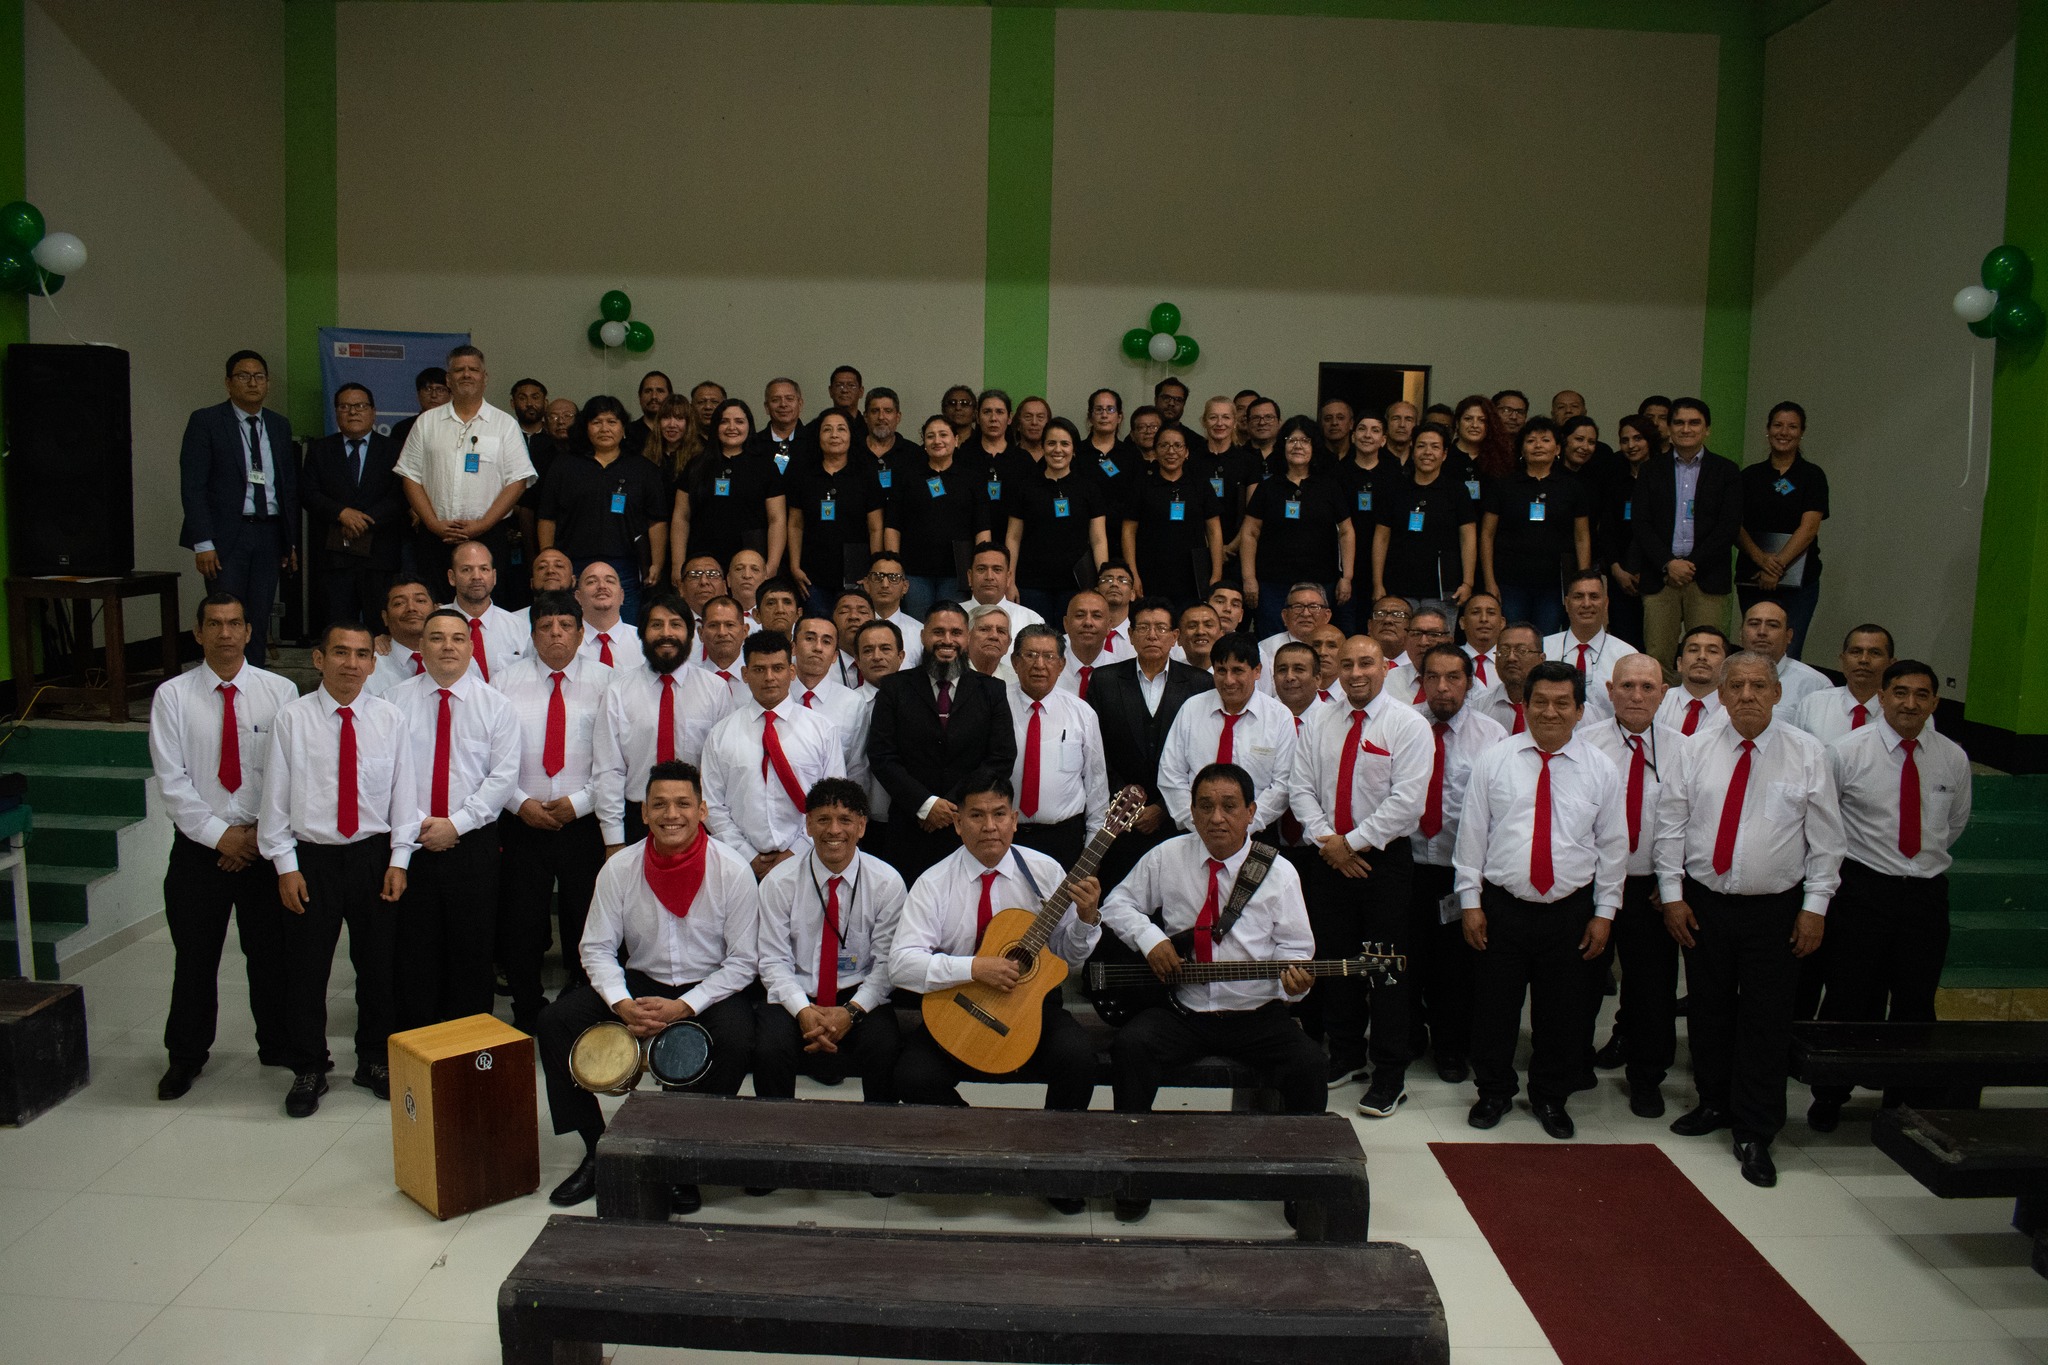 Coro Nacional del Perú ofreció un espectáculo en el Establecimiento Penitenciario Miguel Castro Castro